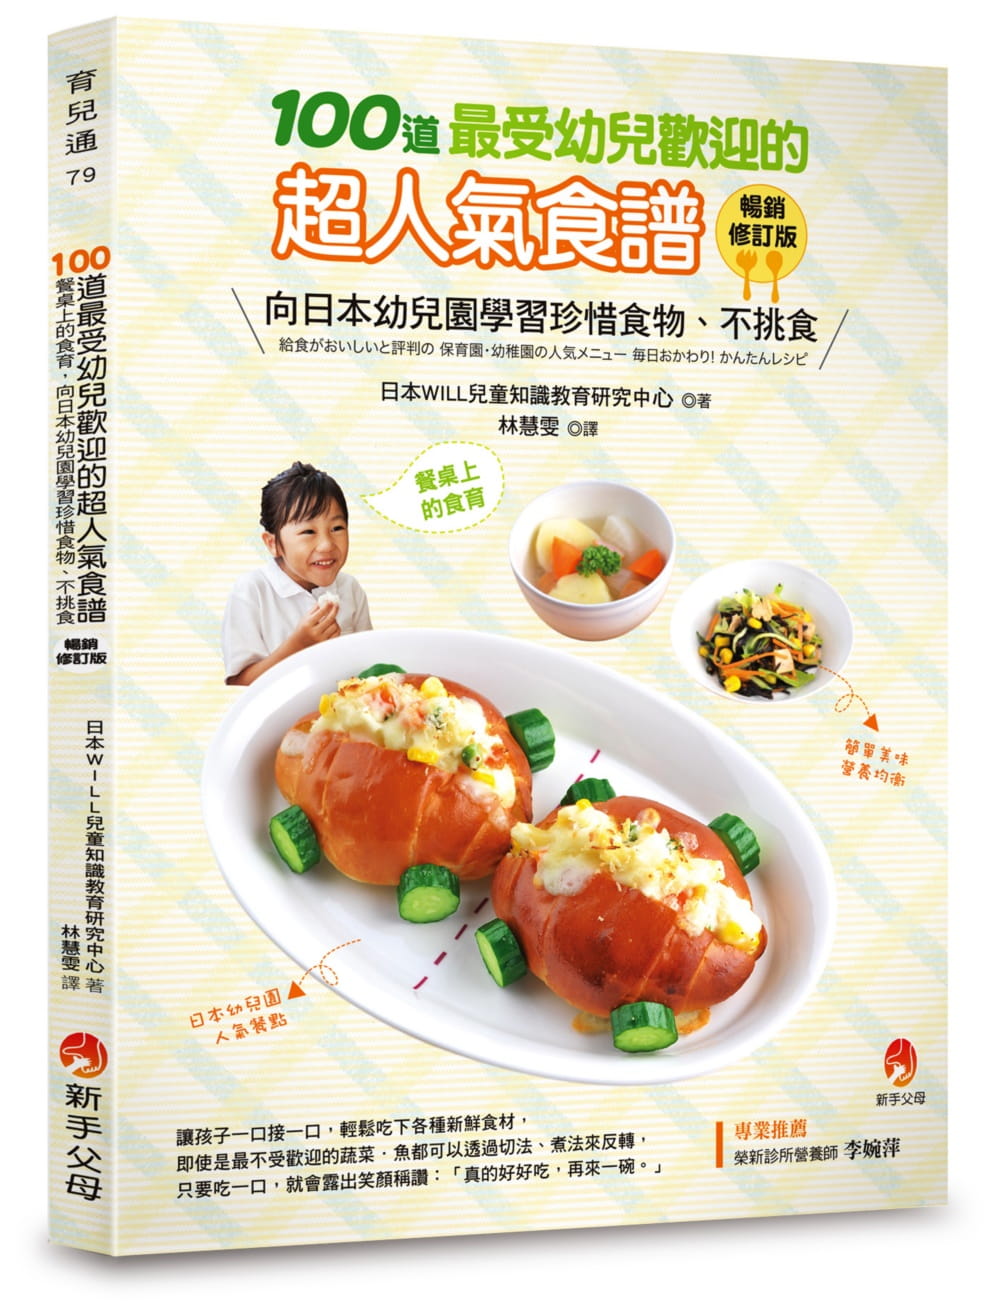 预售 日本WILL儿童知识教育研究中心 100道*受幼儿欢迎的超人气食谱畅销修订版 新手父母